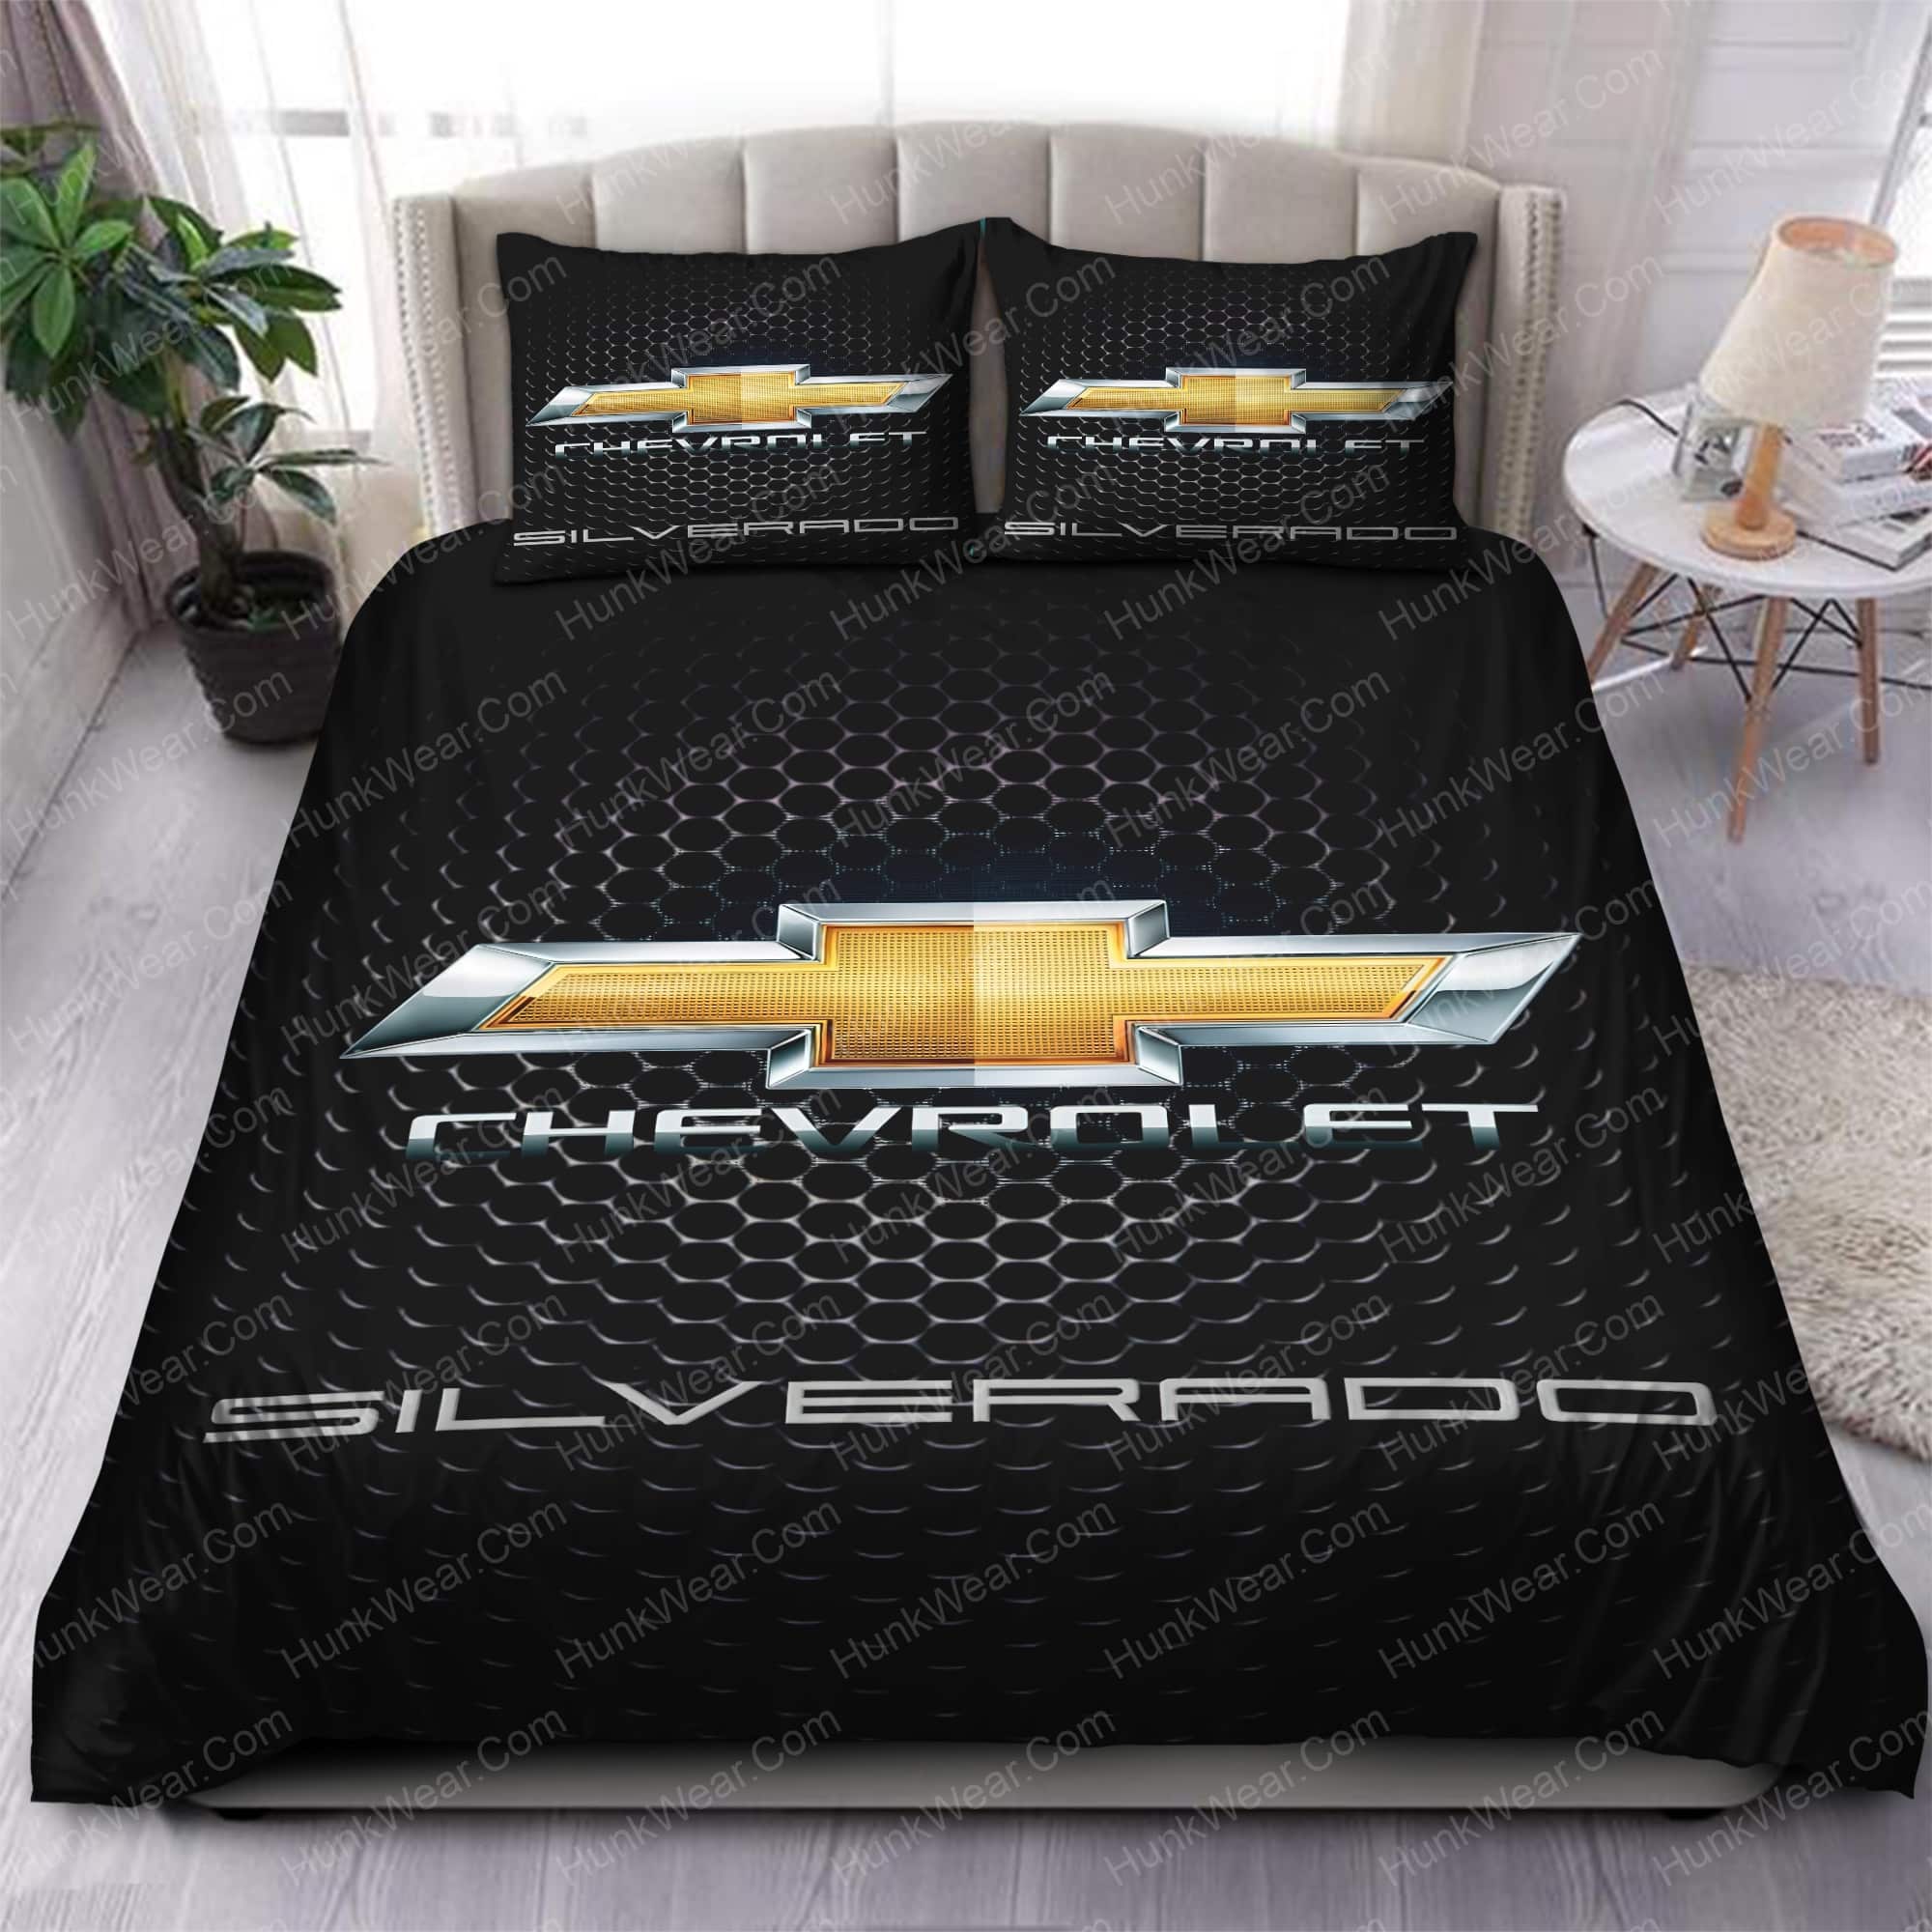 chevrolet silverado bed set bedding set